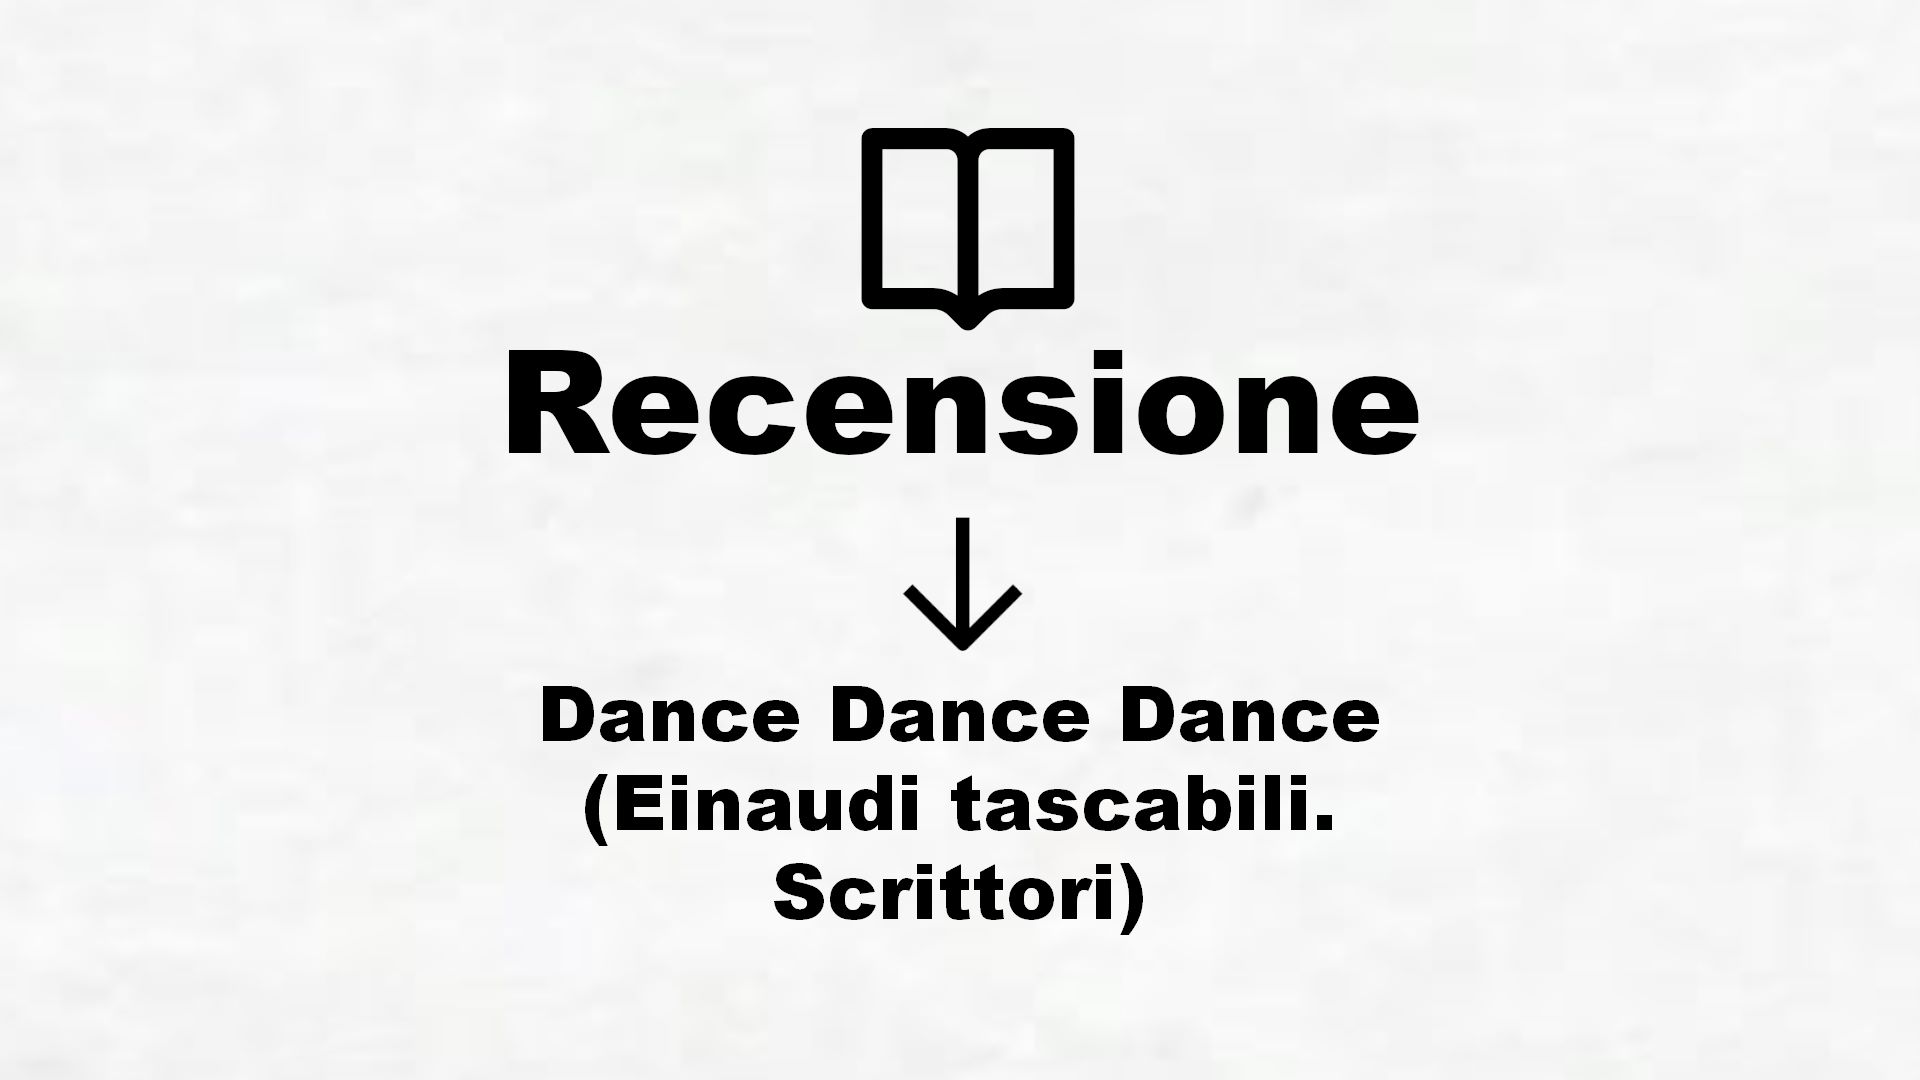 Dance Dance Dance (Einaudi tascabili. Scrittori) – Recensione Libro